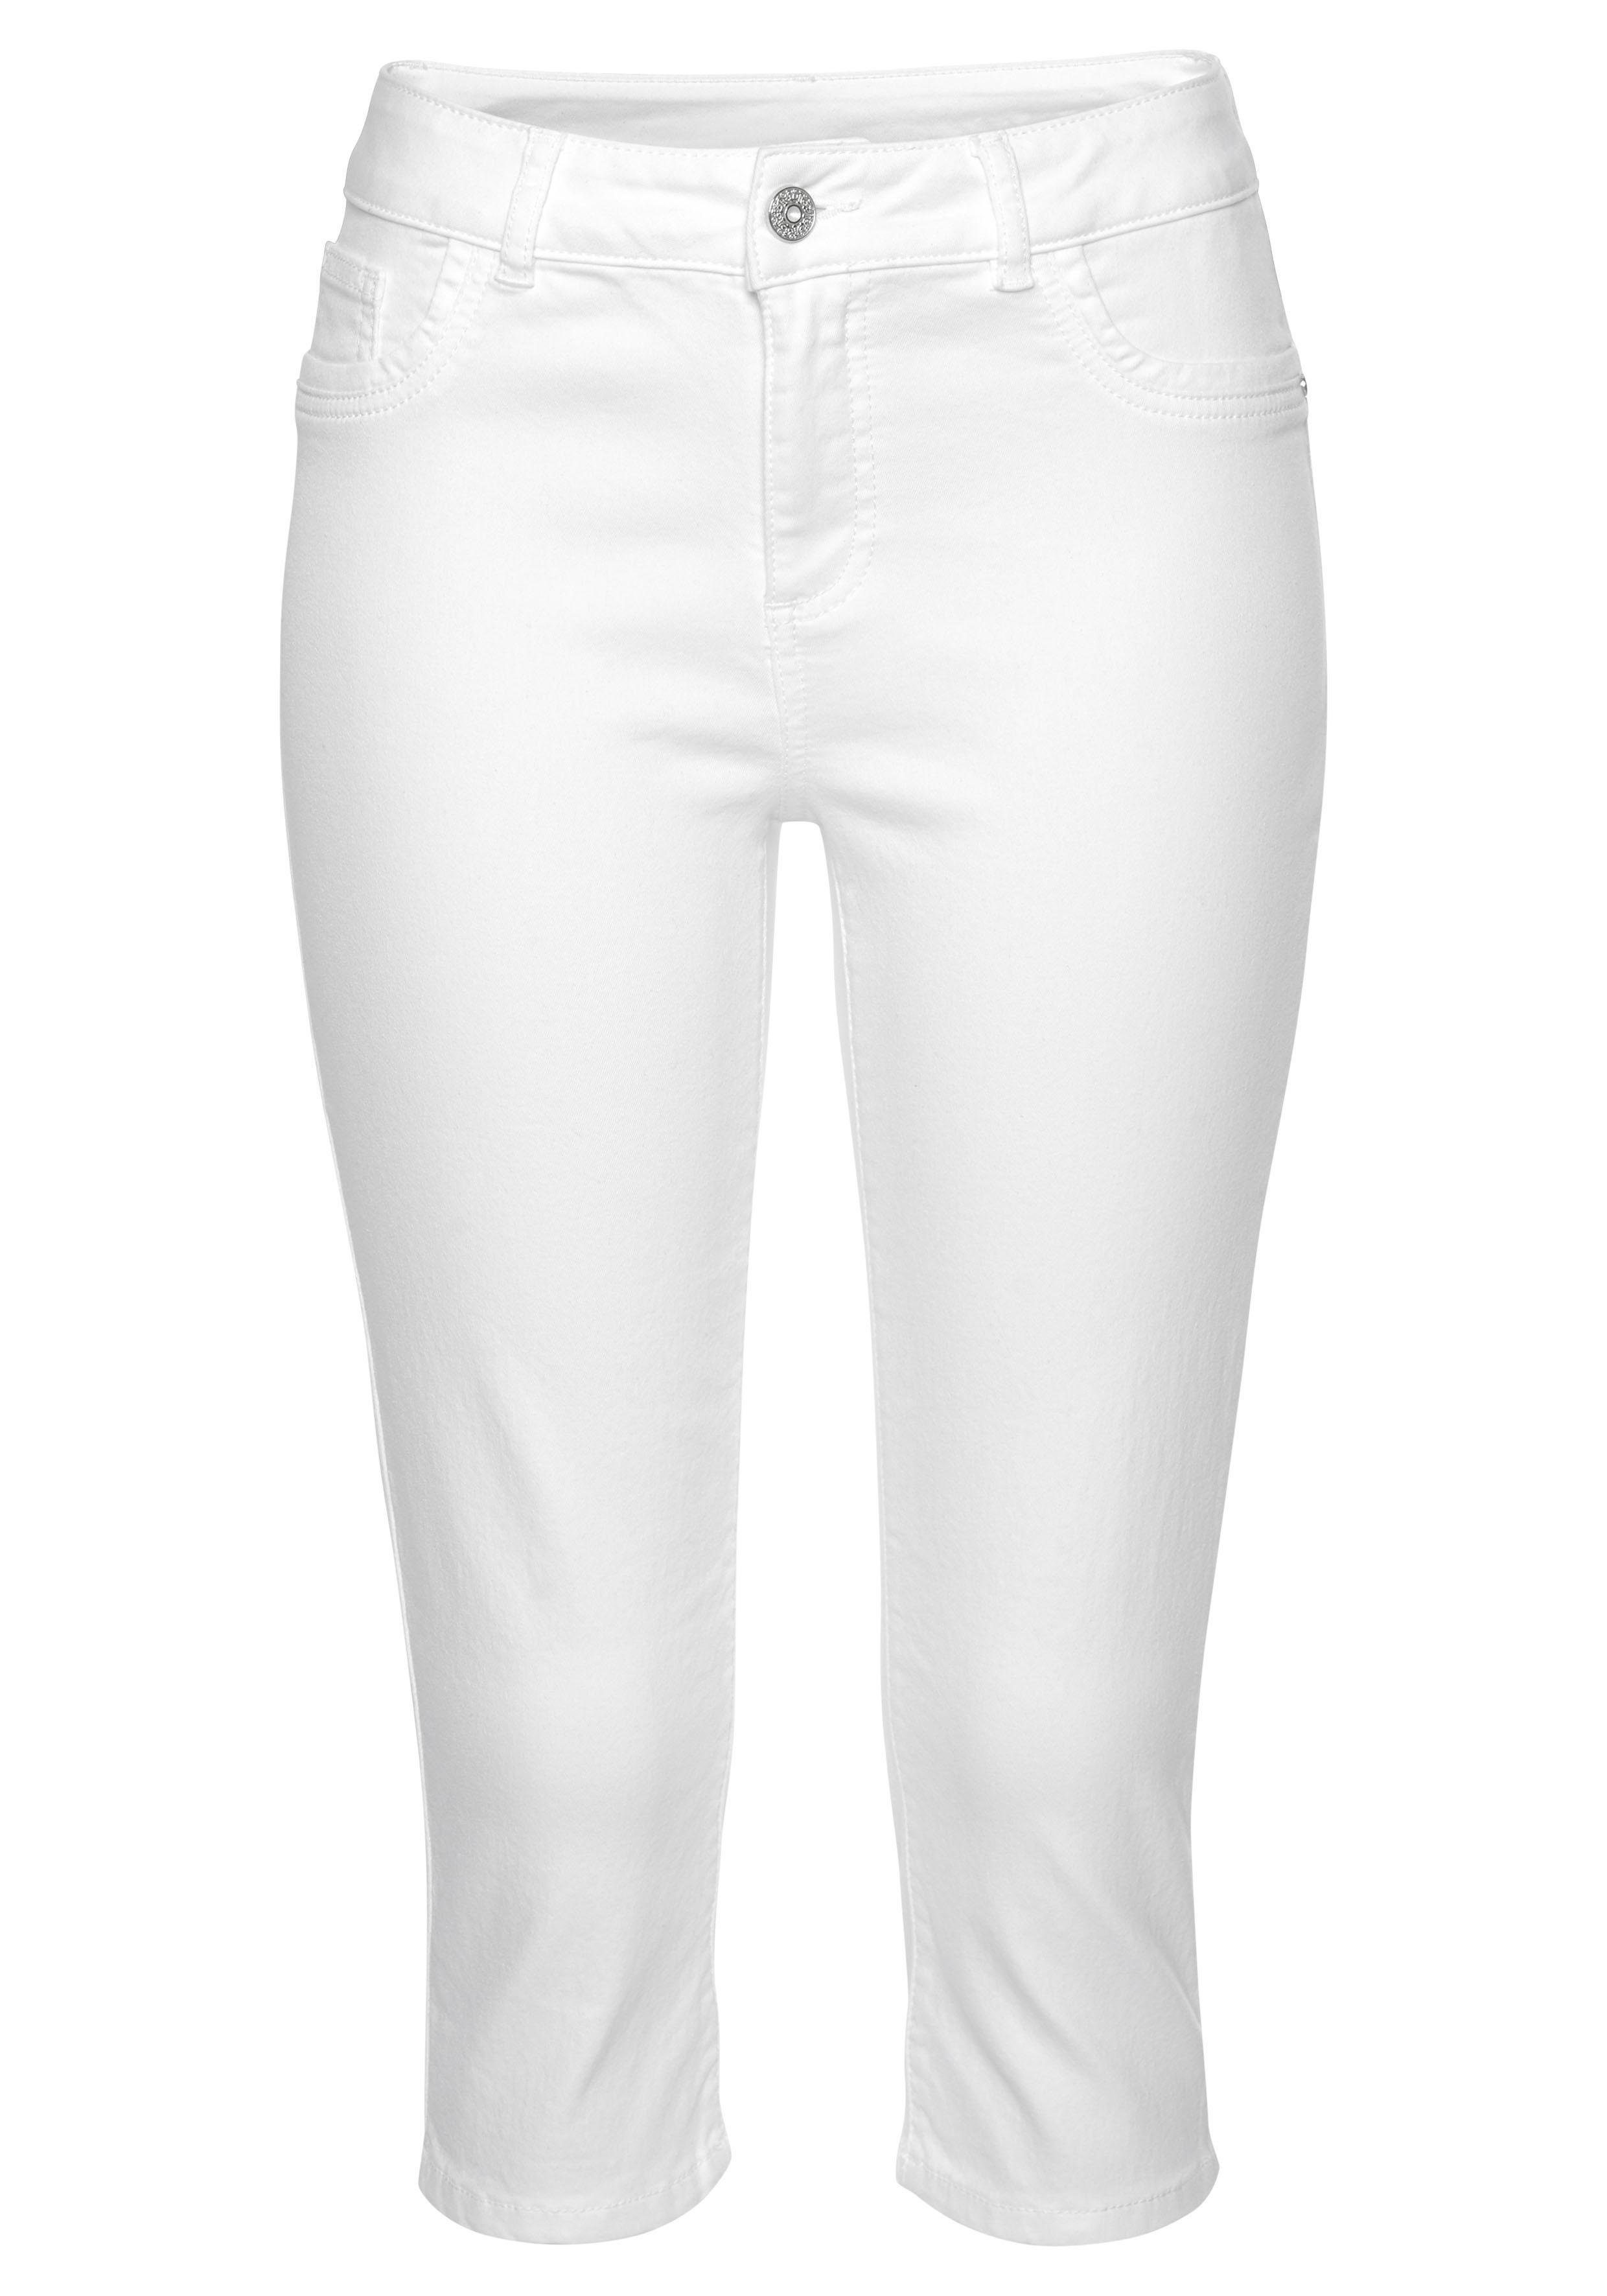 Weiße Damen kurze Hosen online kaufen | OTTO